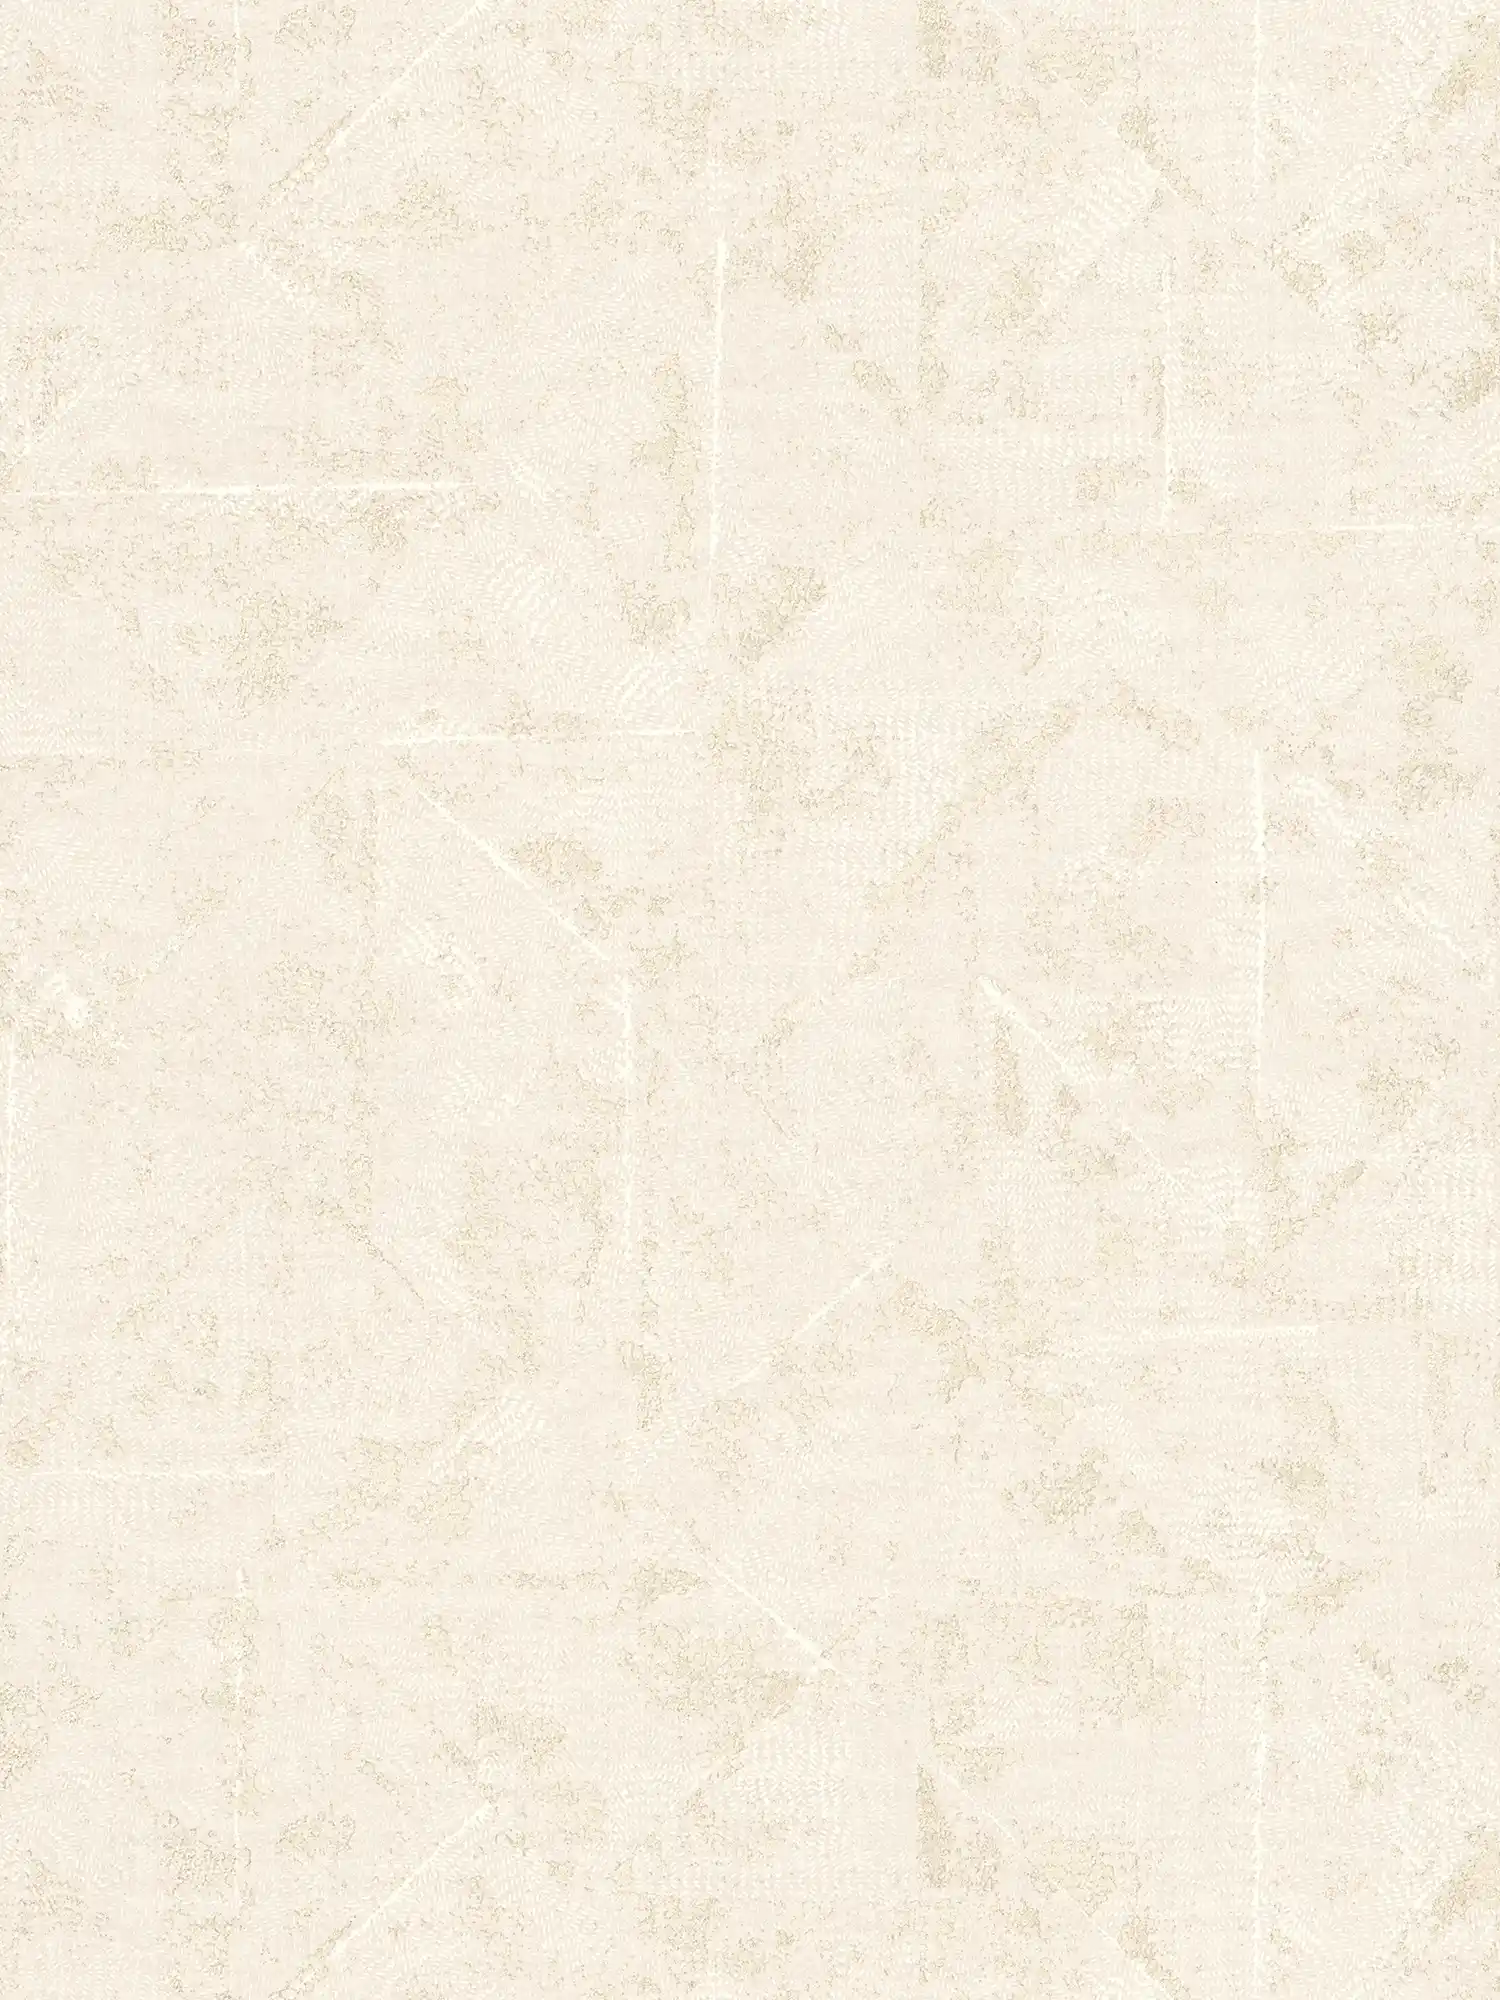 Tapete asymmetrisch gemustert, Used Look – Creme, Weiß, Gold
